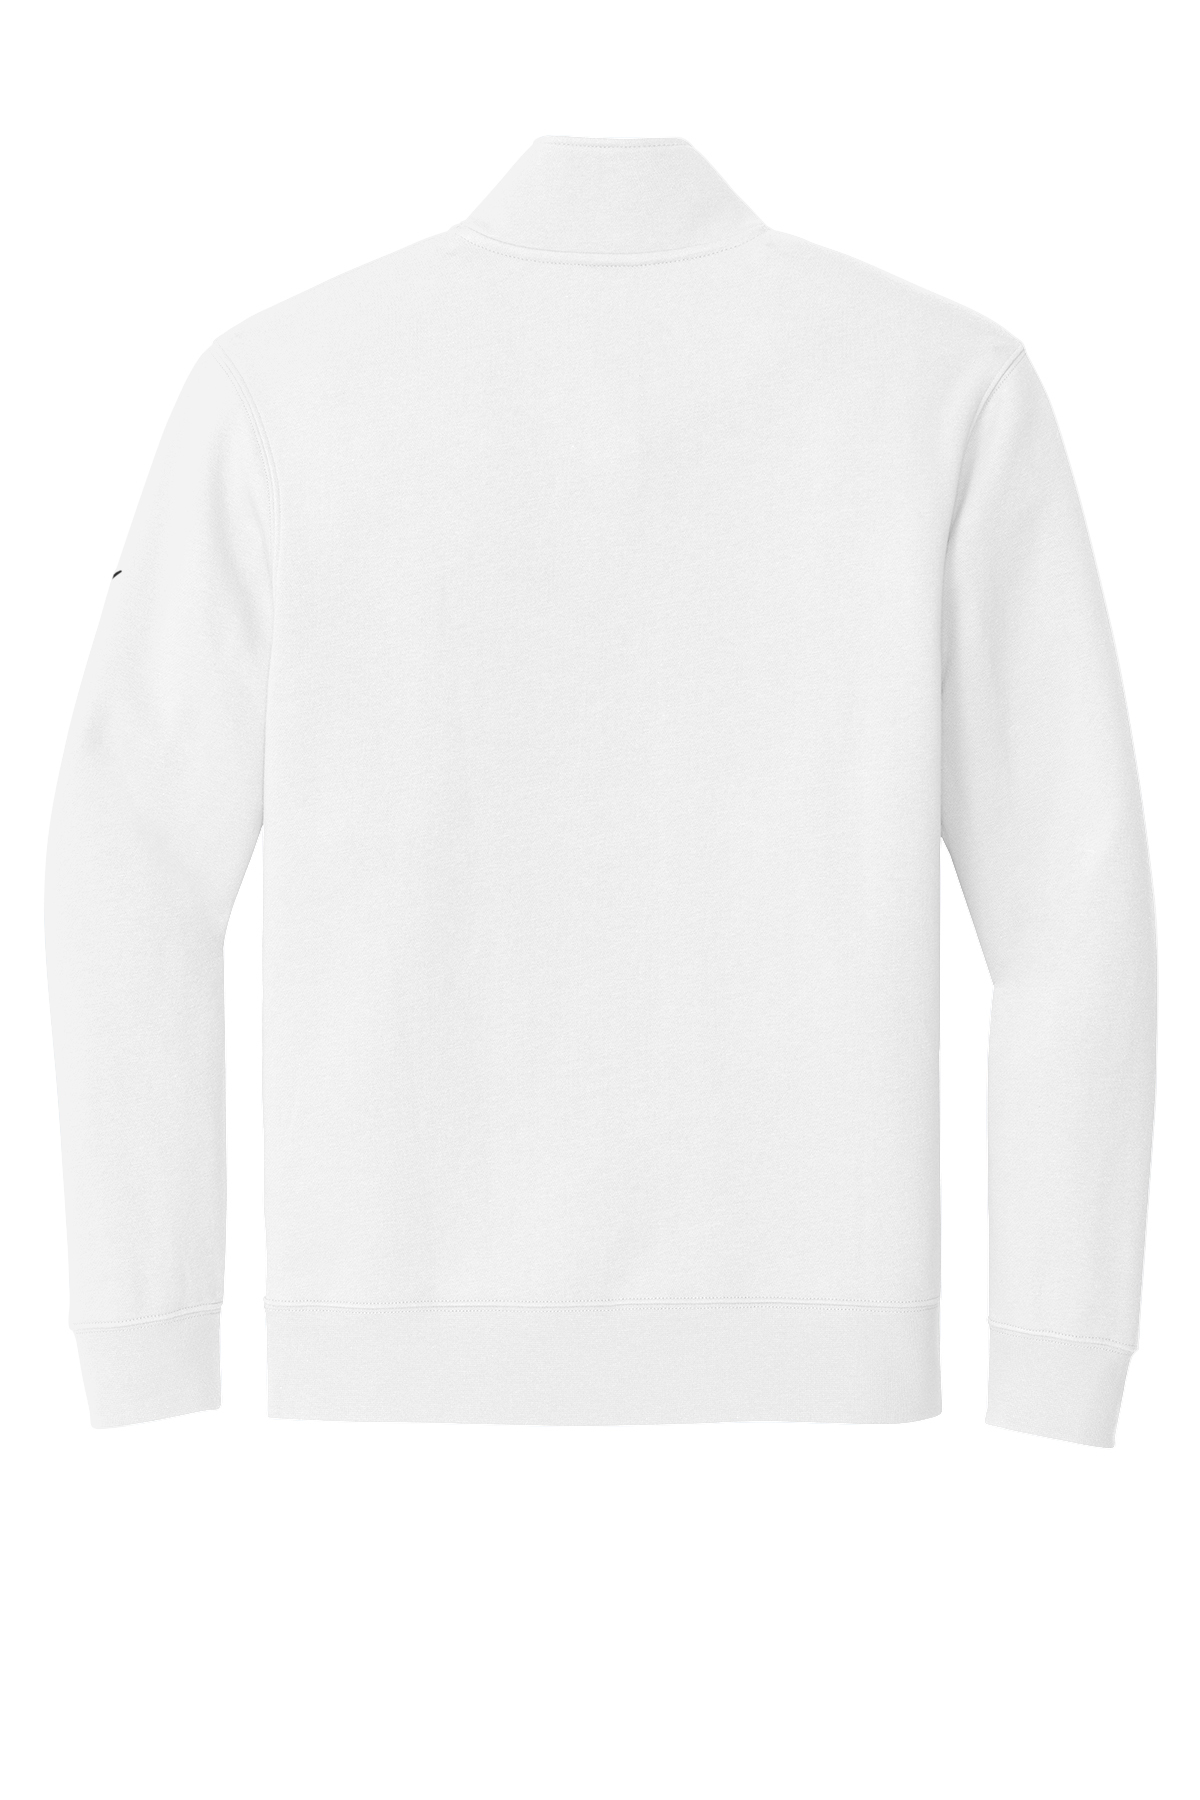 Nike Club Fleece Sleeve Swoosh 1/2-Zip | Product | SanMar